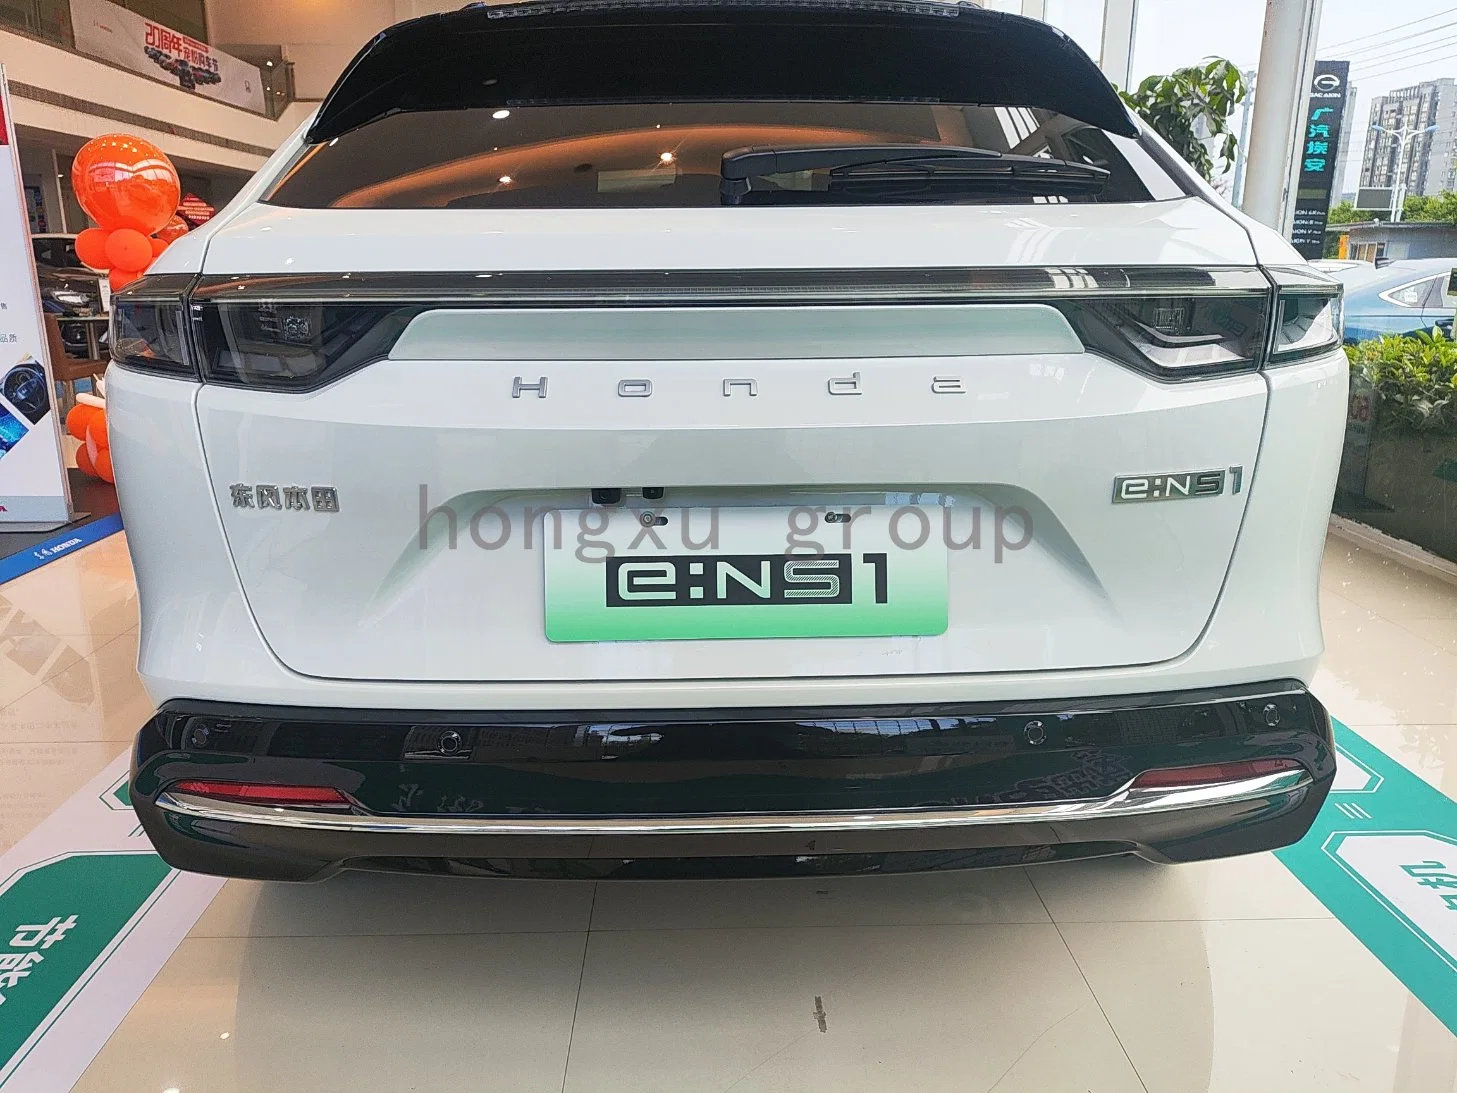 سيارة دونغفنغ هوندا E: NS1 E-Xing Version High-End Electric Auto SUV 2023 EV Cs مع 5 مقاعد سيارة مستعملة جديدة على المدى الطويل